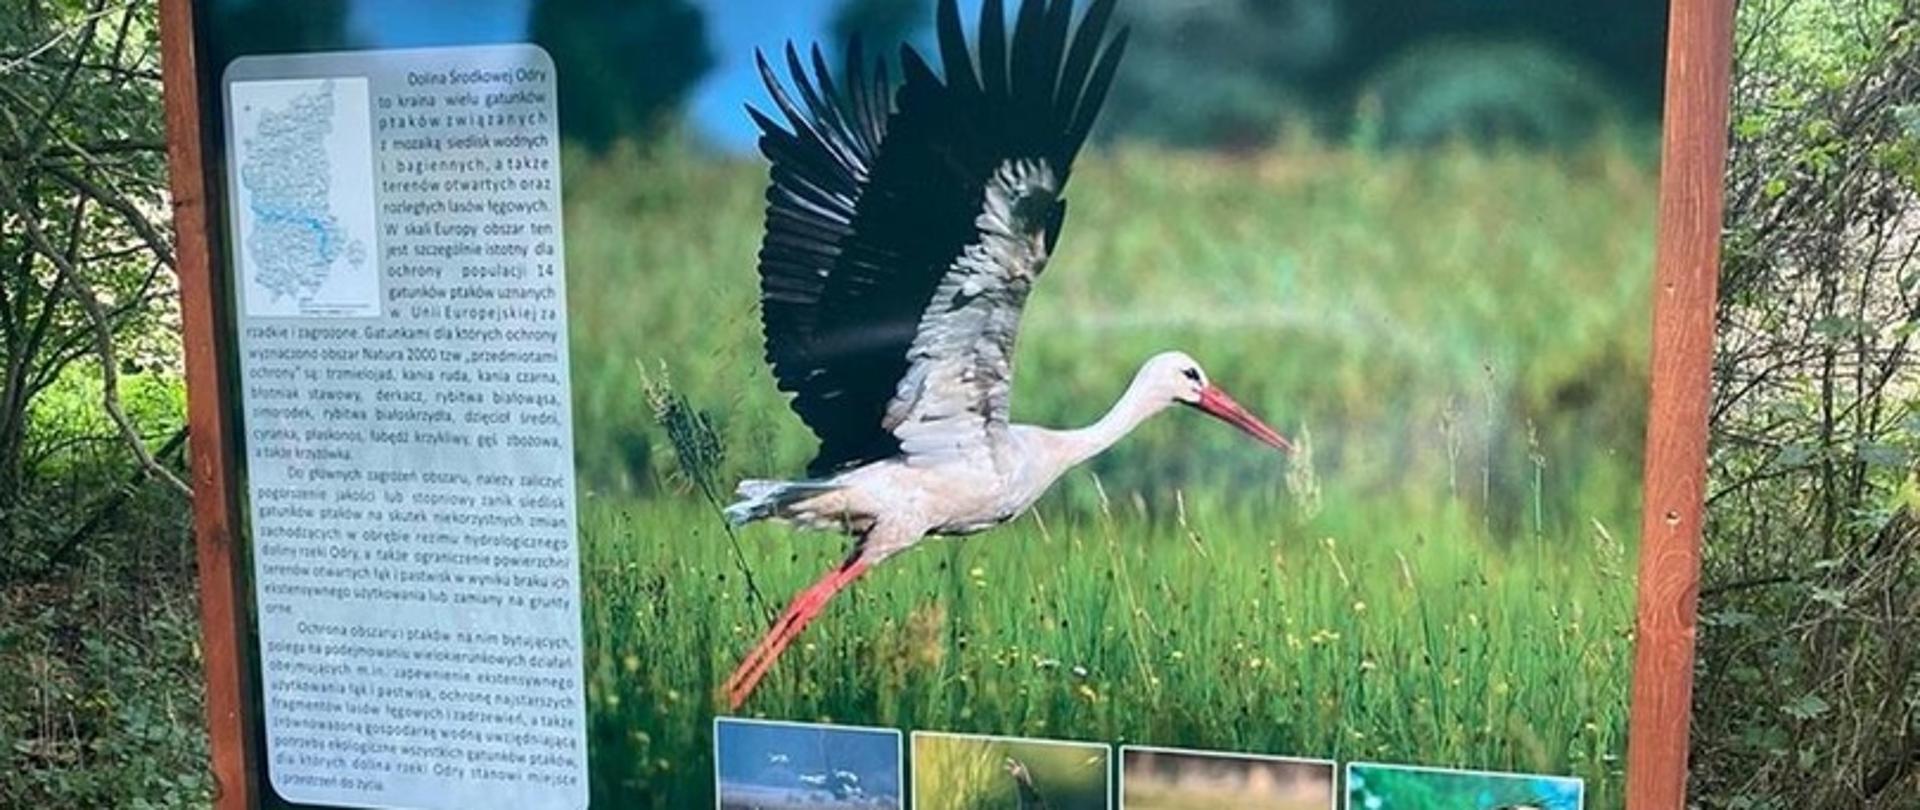 Na zdjęciu tablica a na niej bocian z logiem rdoś oraz opis dot. obszaru Natura 2000 Dolina Środkowej Odry